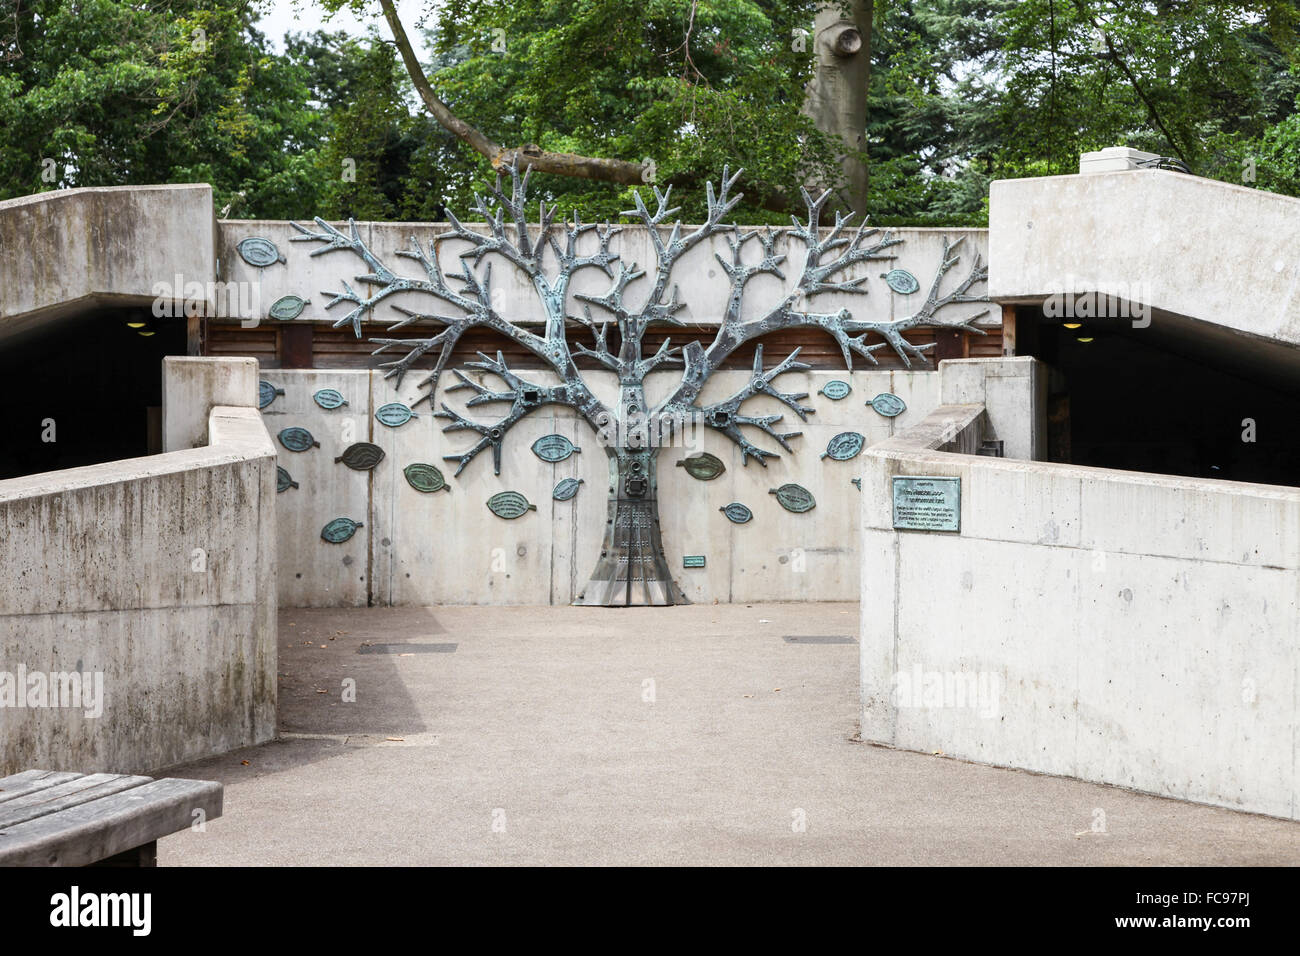 Un Rhizotron composé de pièces de bronze résumé à Kew Gardens Royal Botanical Gardens London England UK Banque D'Images